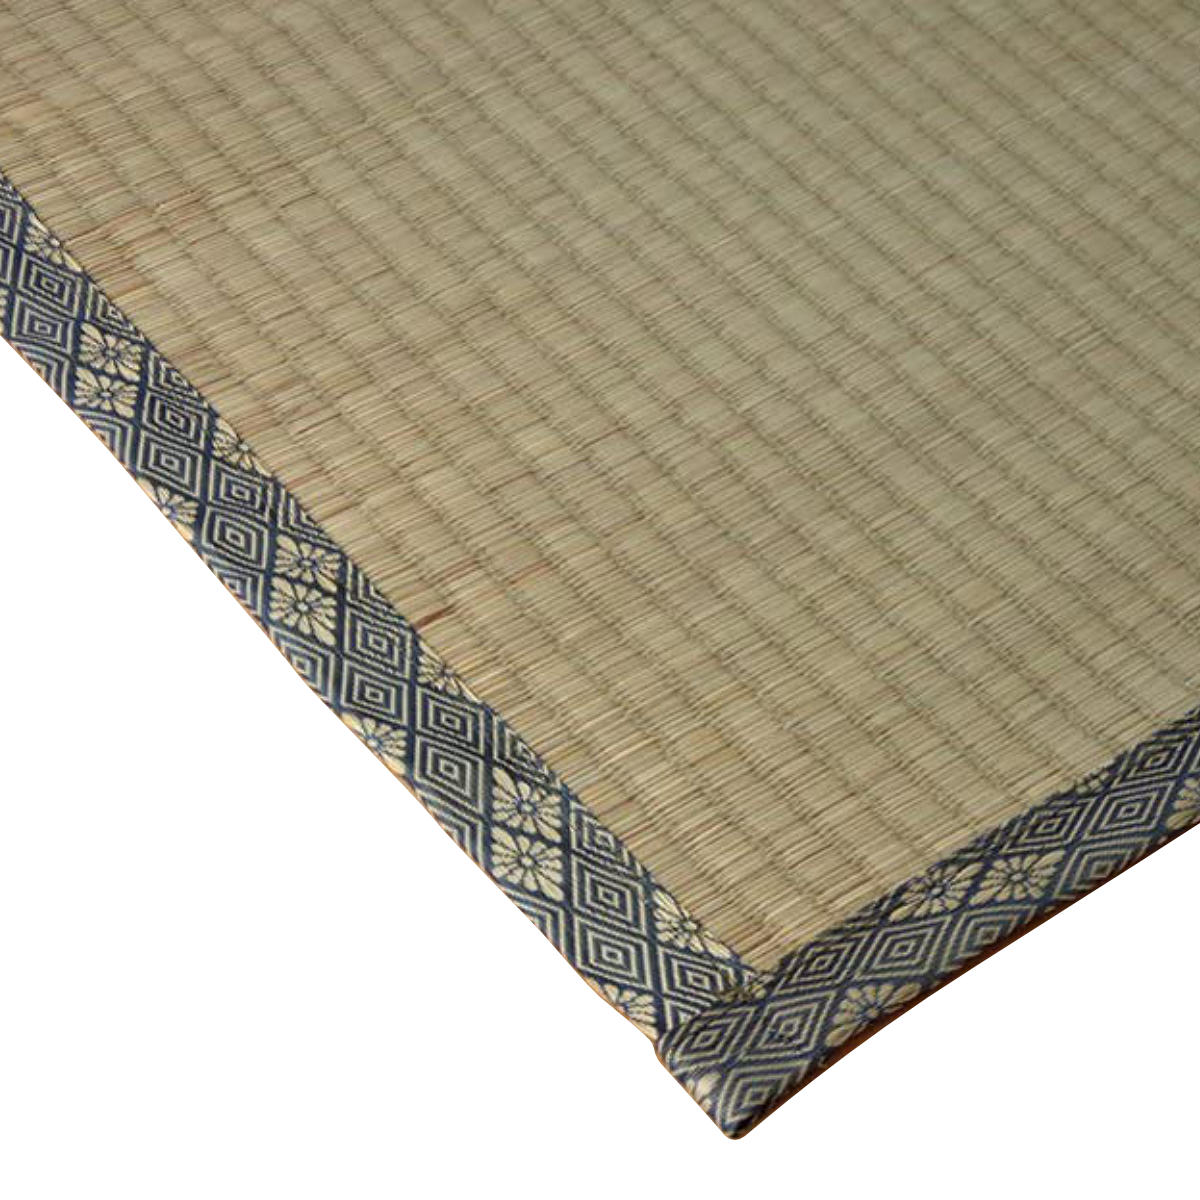 い草上敷き 純国産 い草 カーペット 糸引織 湯沢 団地間6畳 約255×340cm